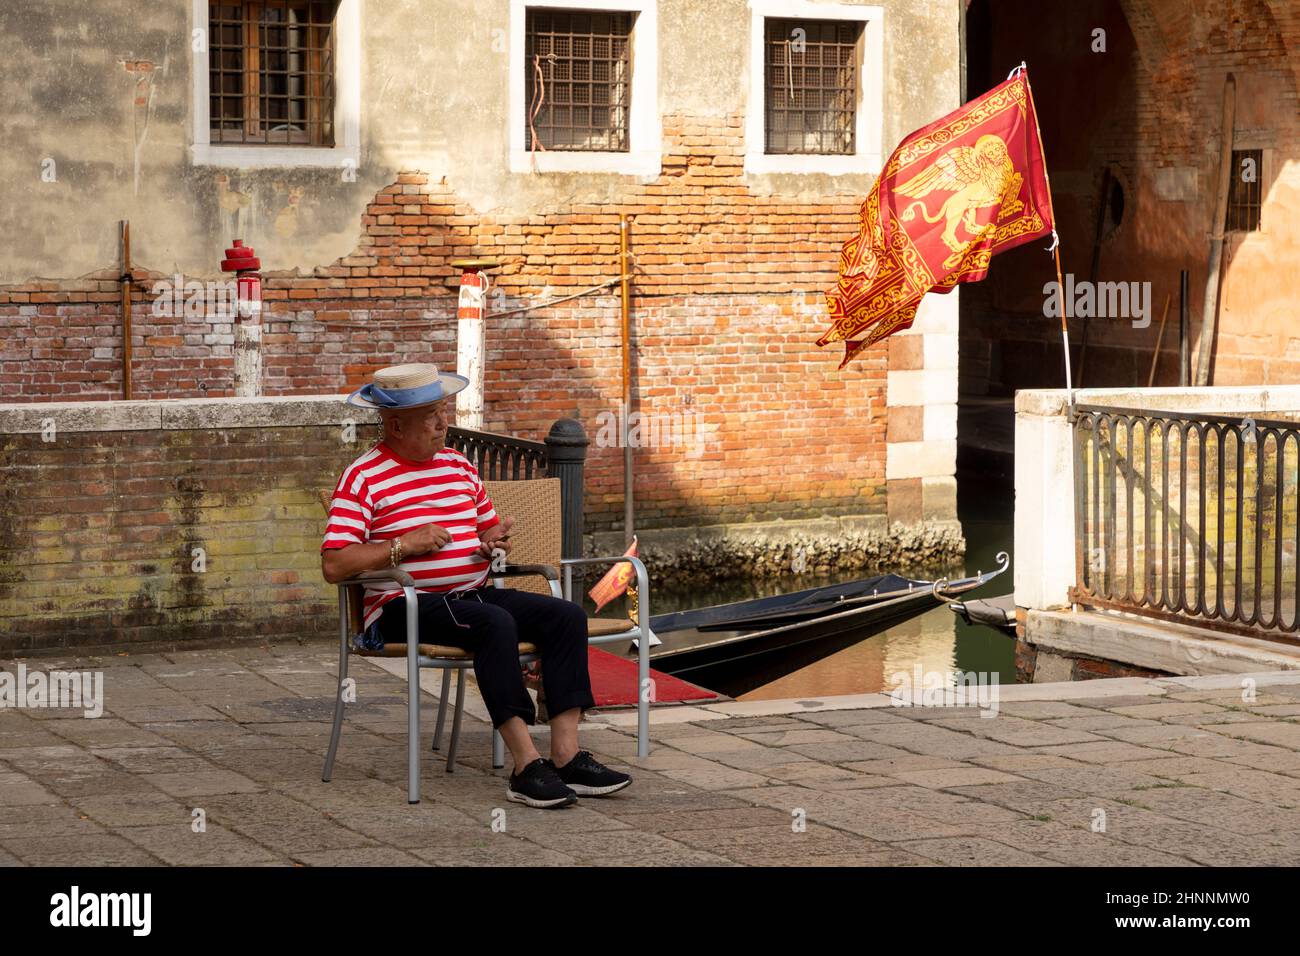 le gondolier est assis dans une chaise et attend les touristes. En raison de la pandémie de Corona, il n'y a que quelques touristes à Venise, en Italie Banque D'Images